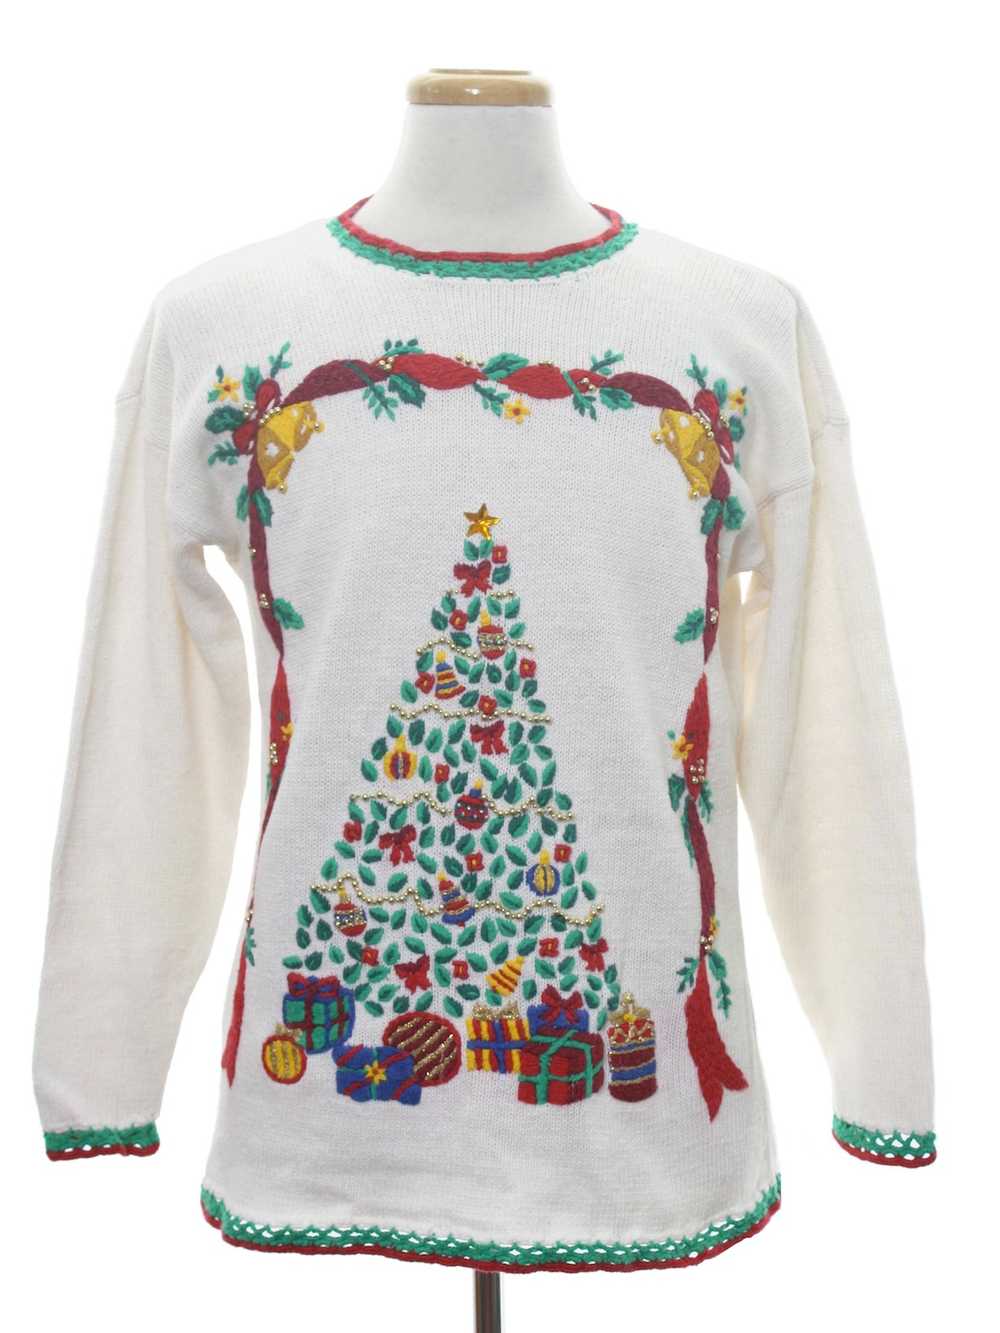 Nutcracker Unisex Ugly Christmas Sweater - image 1